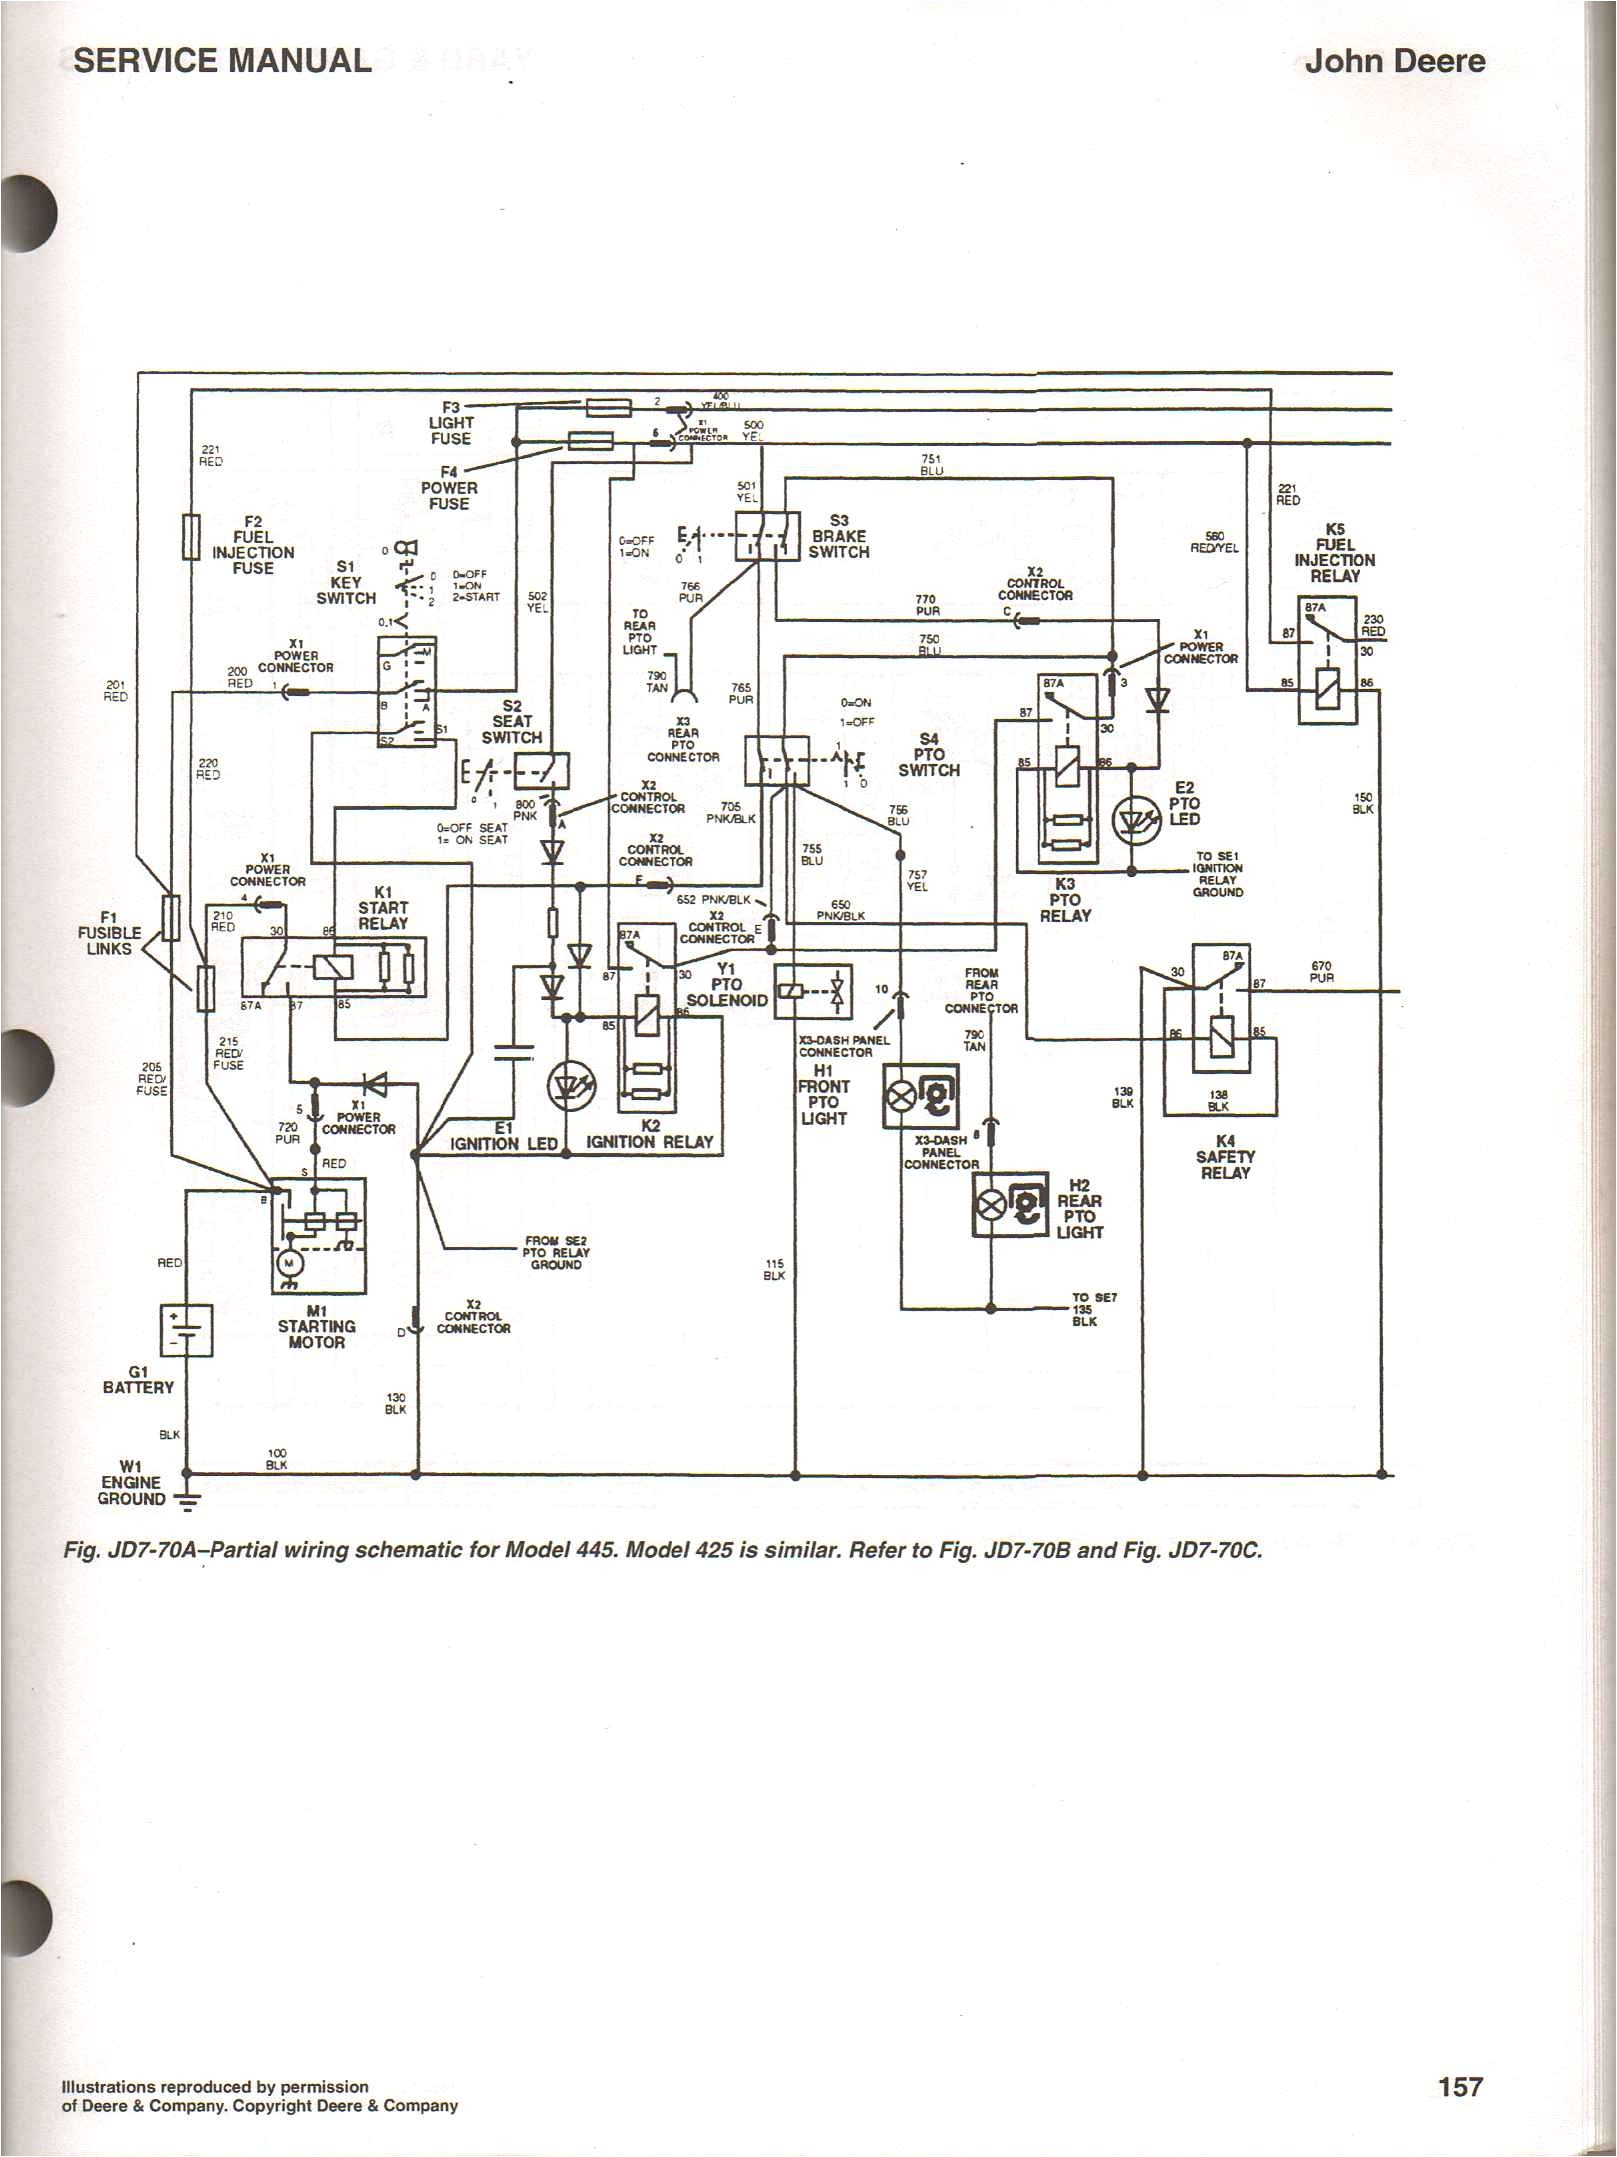 wrg 8679 john deere 4010 24v wiring diagram4230 john deere alternator wiring diagrams 100